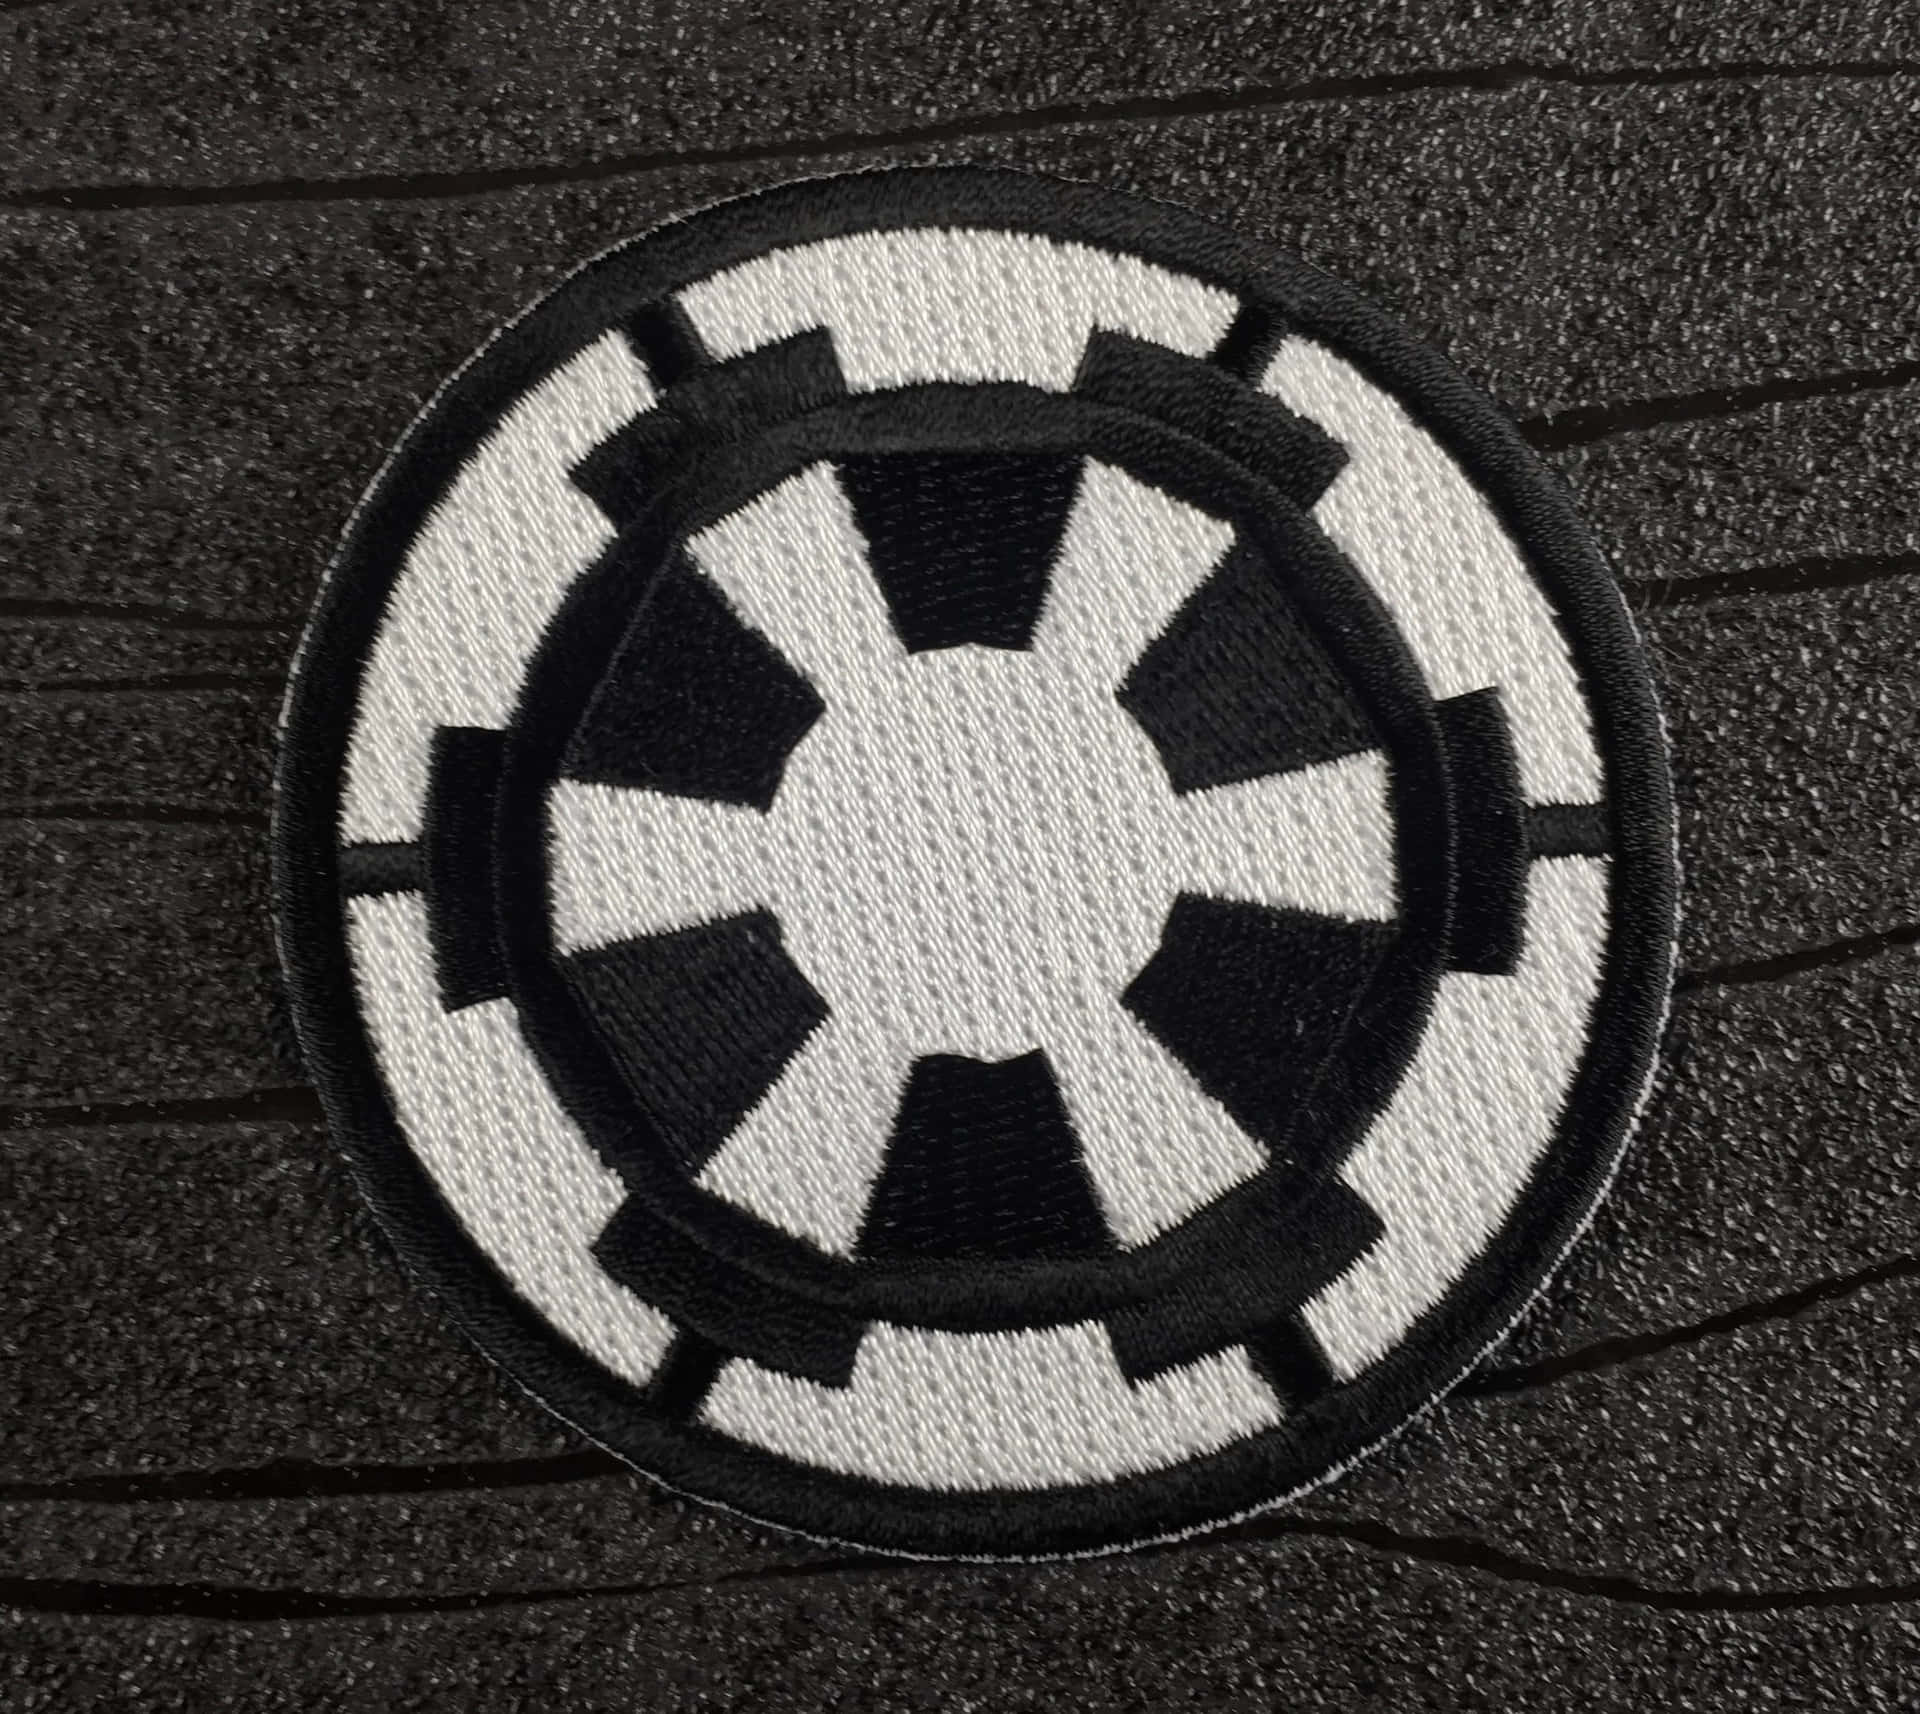 Darth Vader Helmet with Star Wars Empire Logo Wallpaper